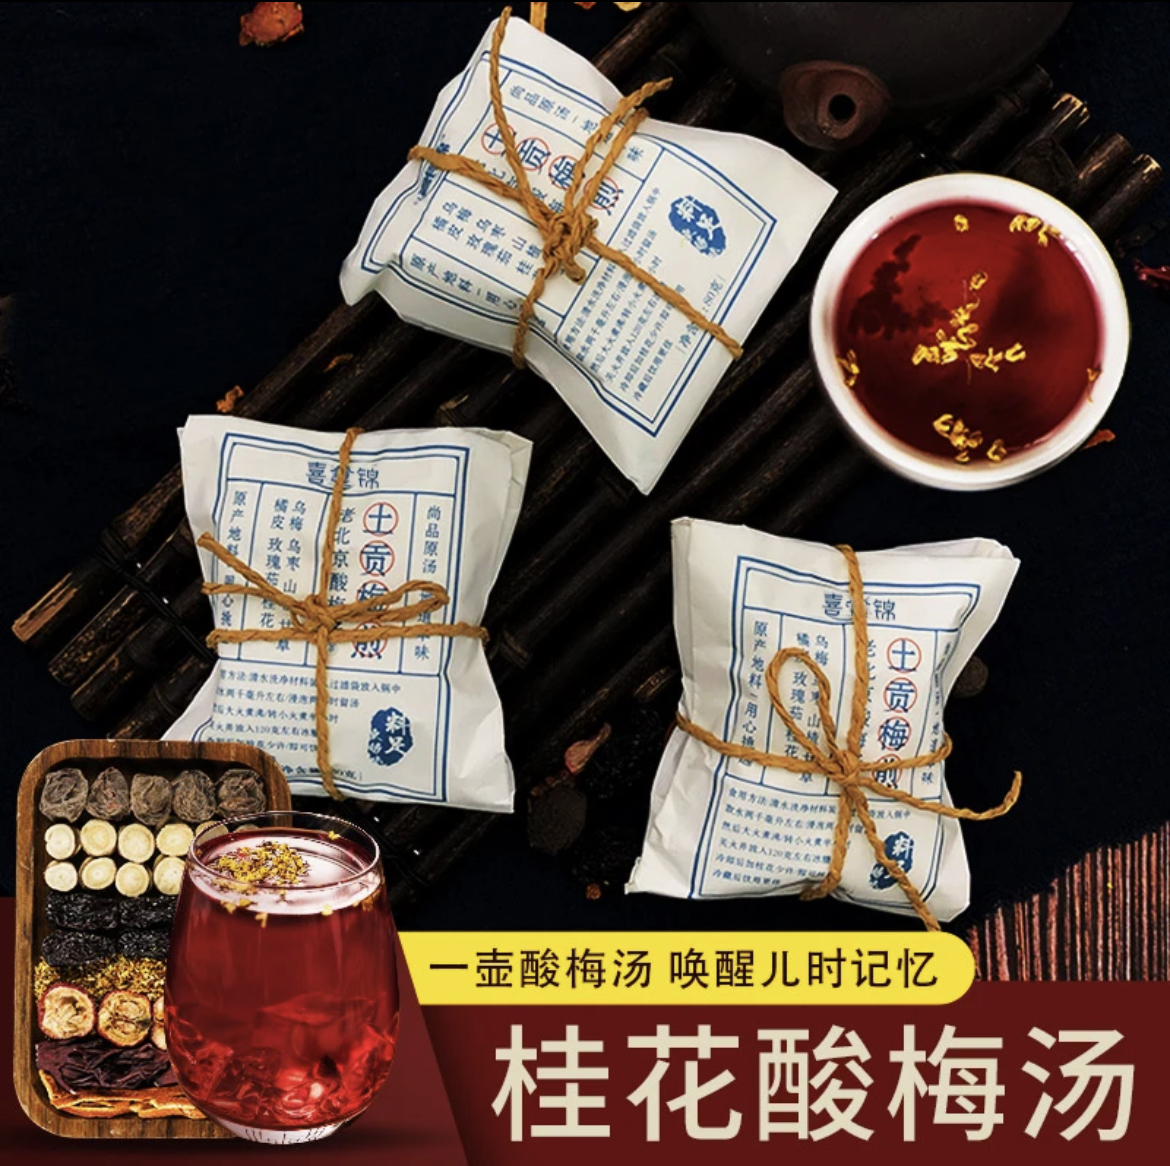 【家庭装】喜食锦桂花酸梅汤自制茶包